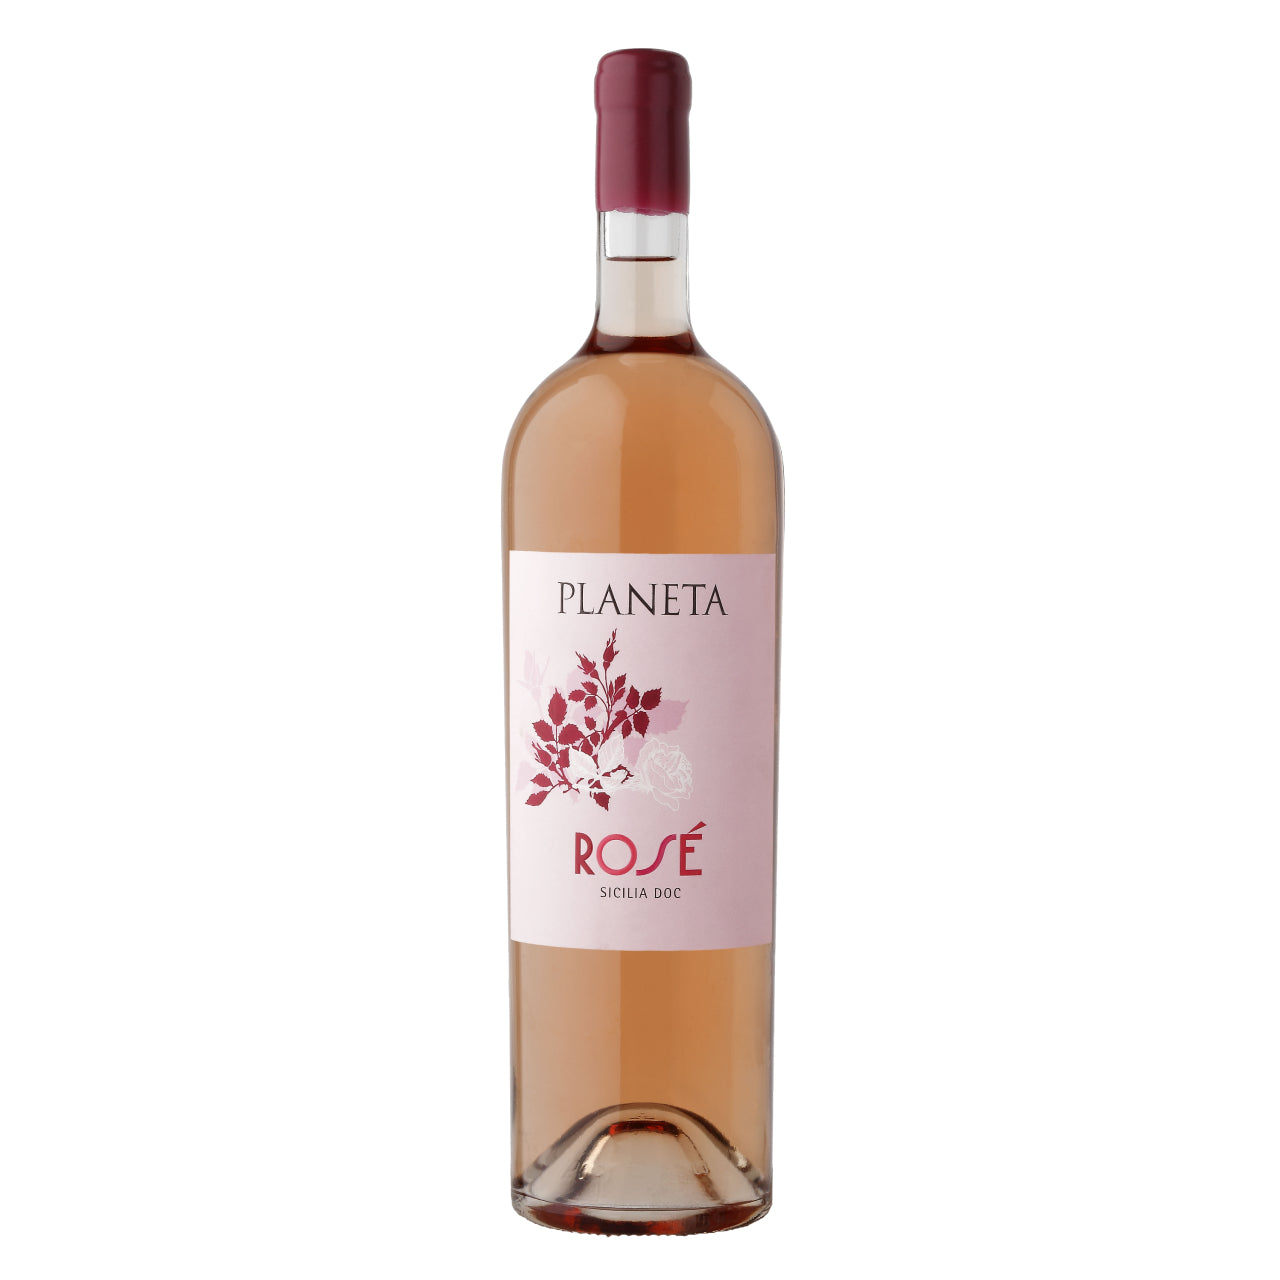 Planeta Rose Sicilia 2021 - Wine Italy Rose - Liquor Wine Cave